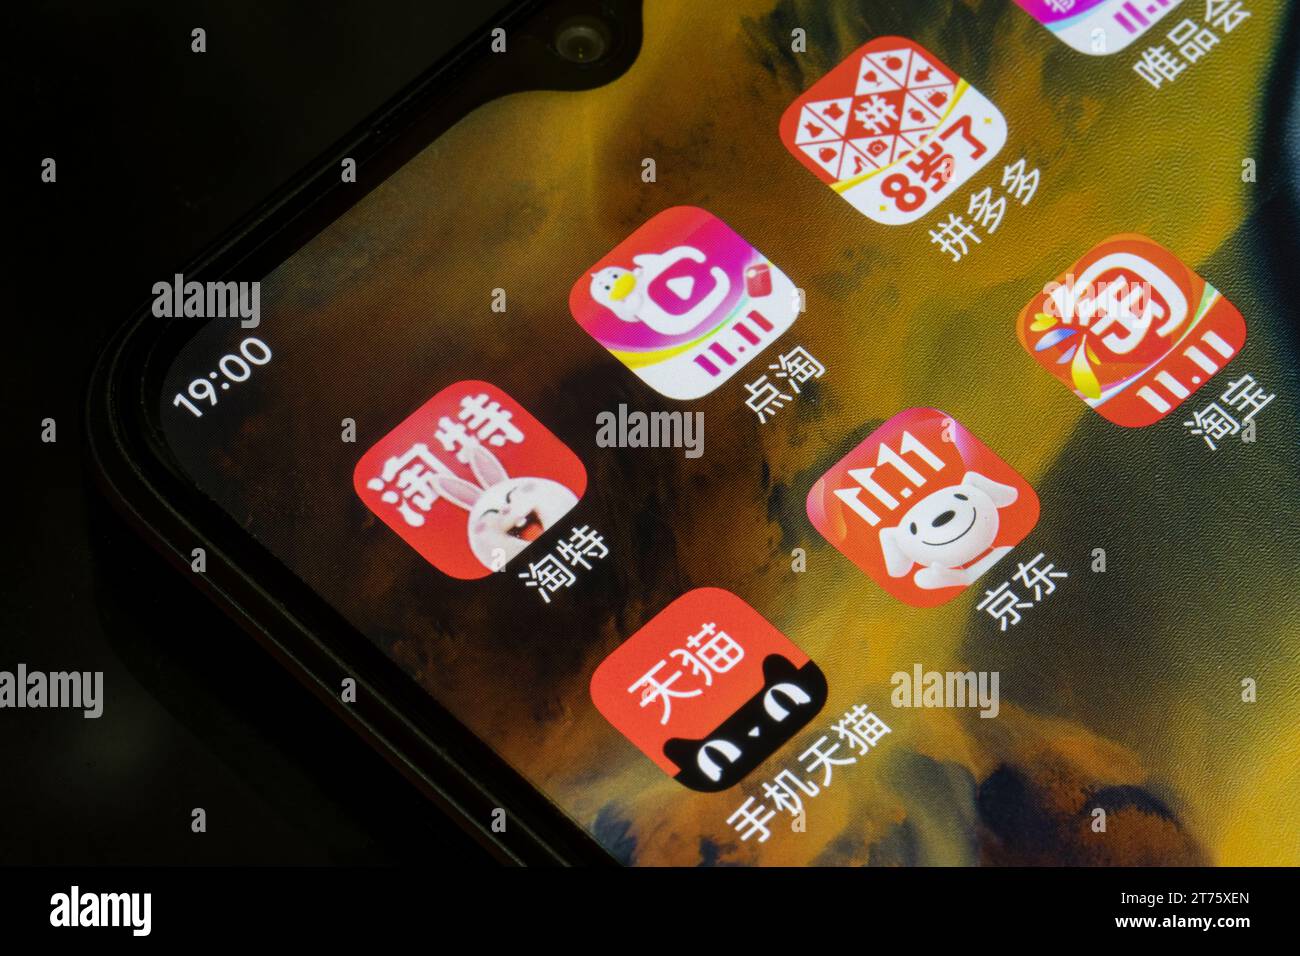 Varie app di e-commerce cinesi: JD.com, Pinduoduo e Alibaba's Tmall, Taobao, Taote, e Diantao - sono visti su uno smartphone prima del Double 11... Foto Stock